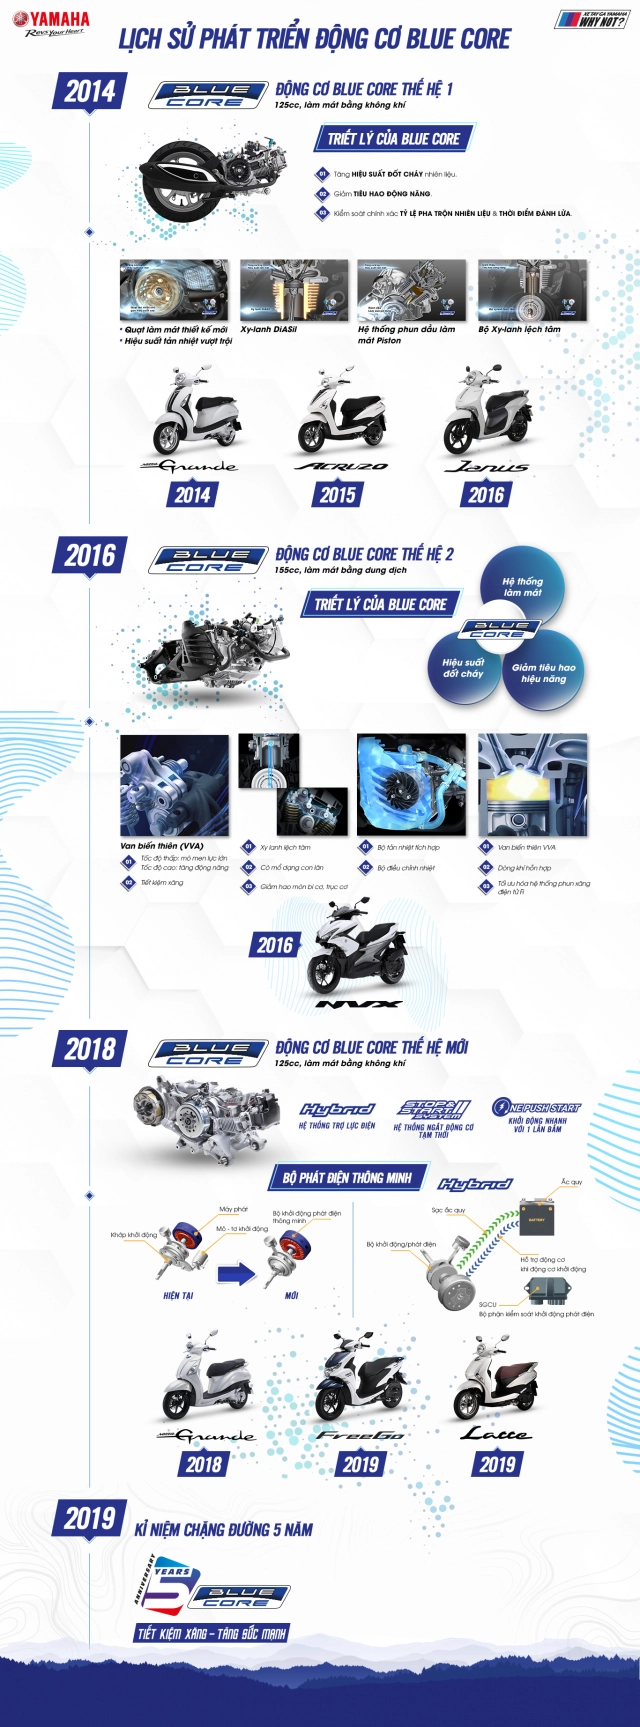 Yamaha vn tổ chức hành trình asean touring nhằm kỷ niệm 5 năm ra mắt động cơ blue core - 5